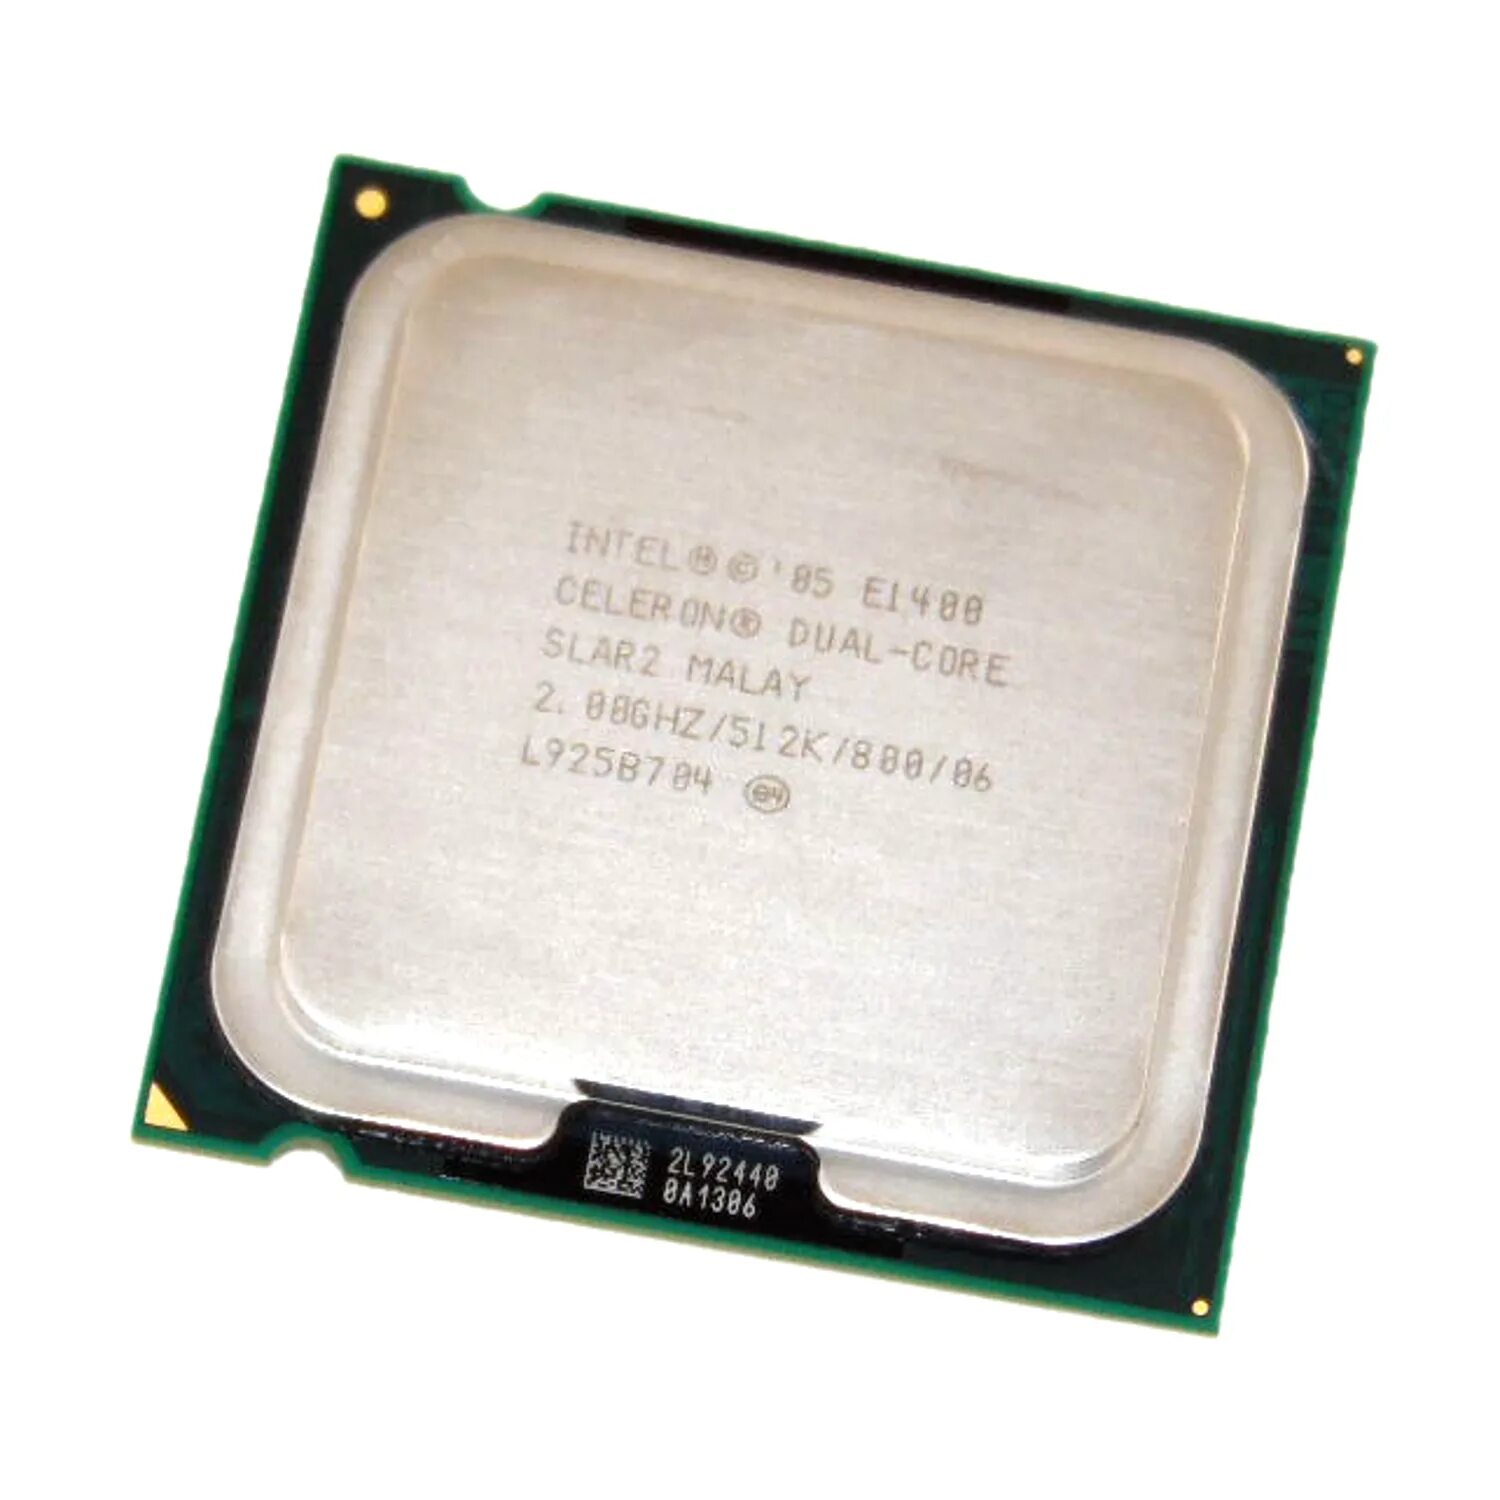 Процессор 775 Socket Celeron Dual-Core e1400 2.0/512/800. Процессор: Intel Pentium Dual Core 2.0GHZ. Intel 05 Celeron Dual-Core. Intel Celeron Dual Core e1400.